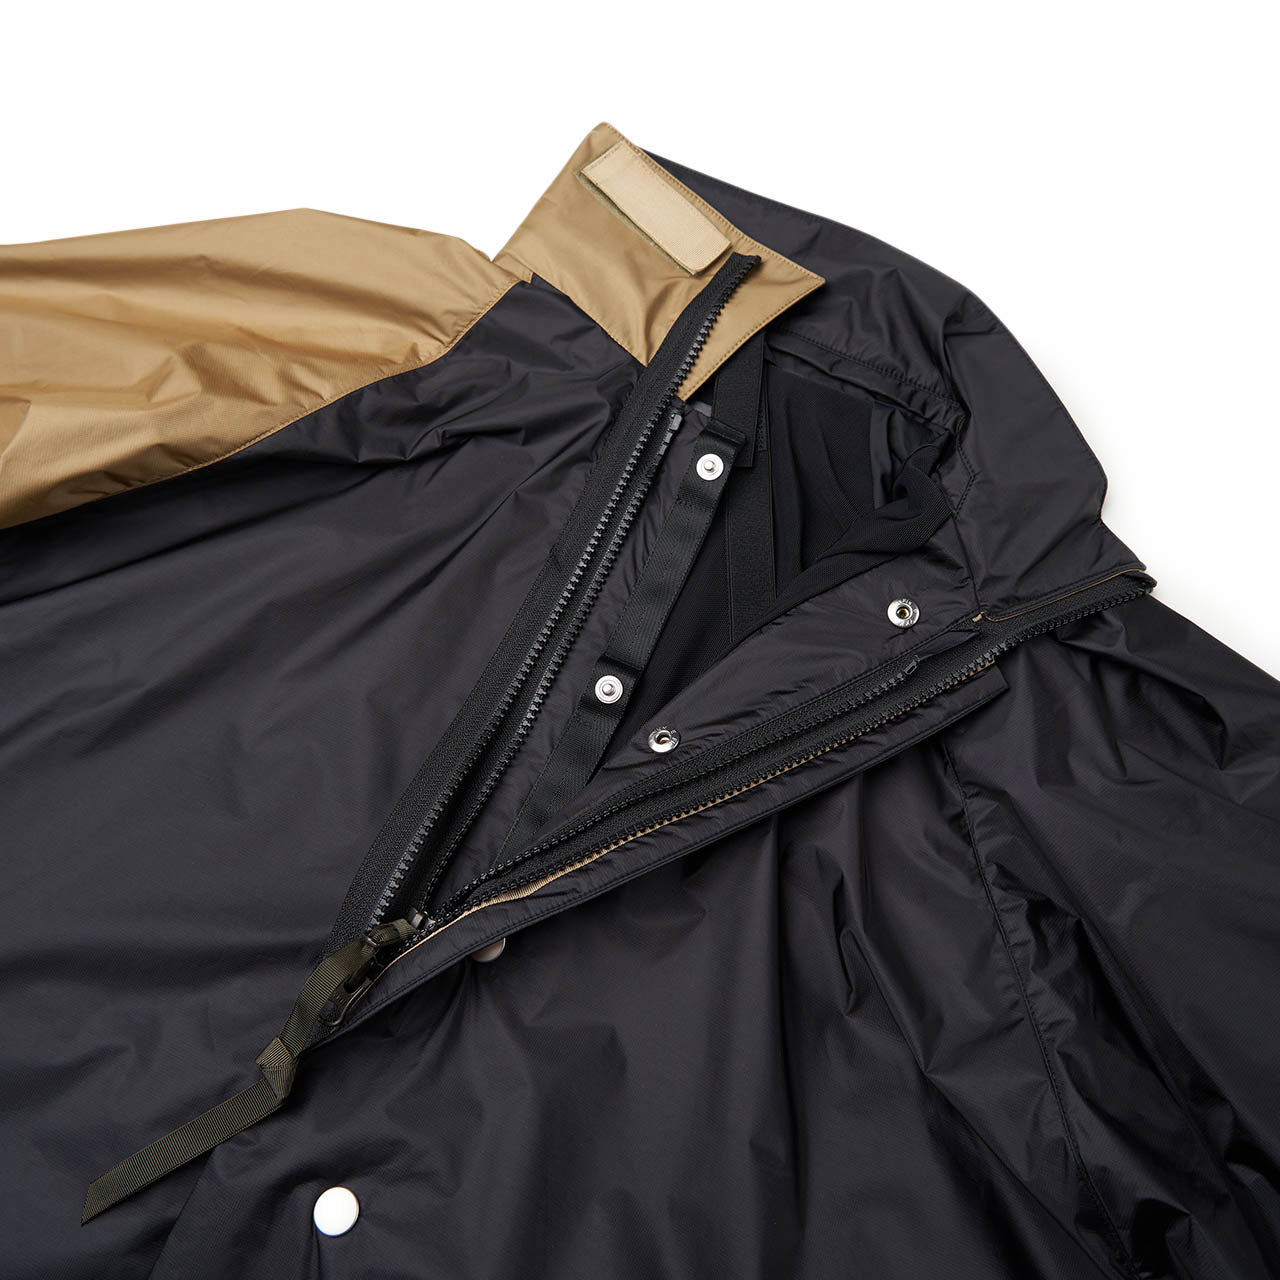 acronym acronym 'j95-ws' hardshell jacket (black / khaki)